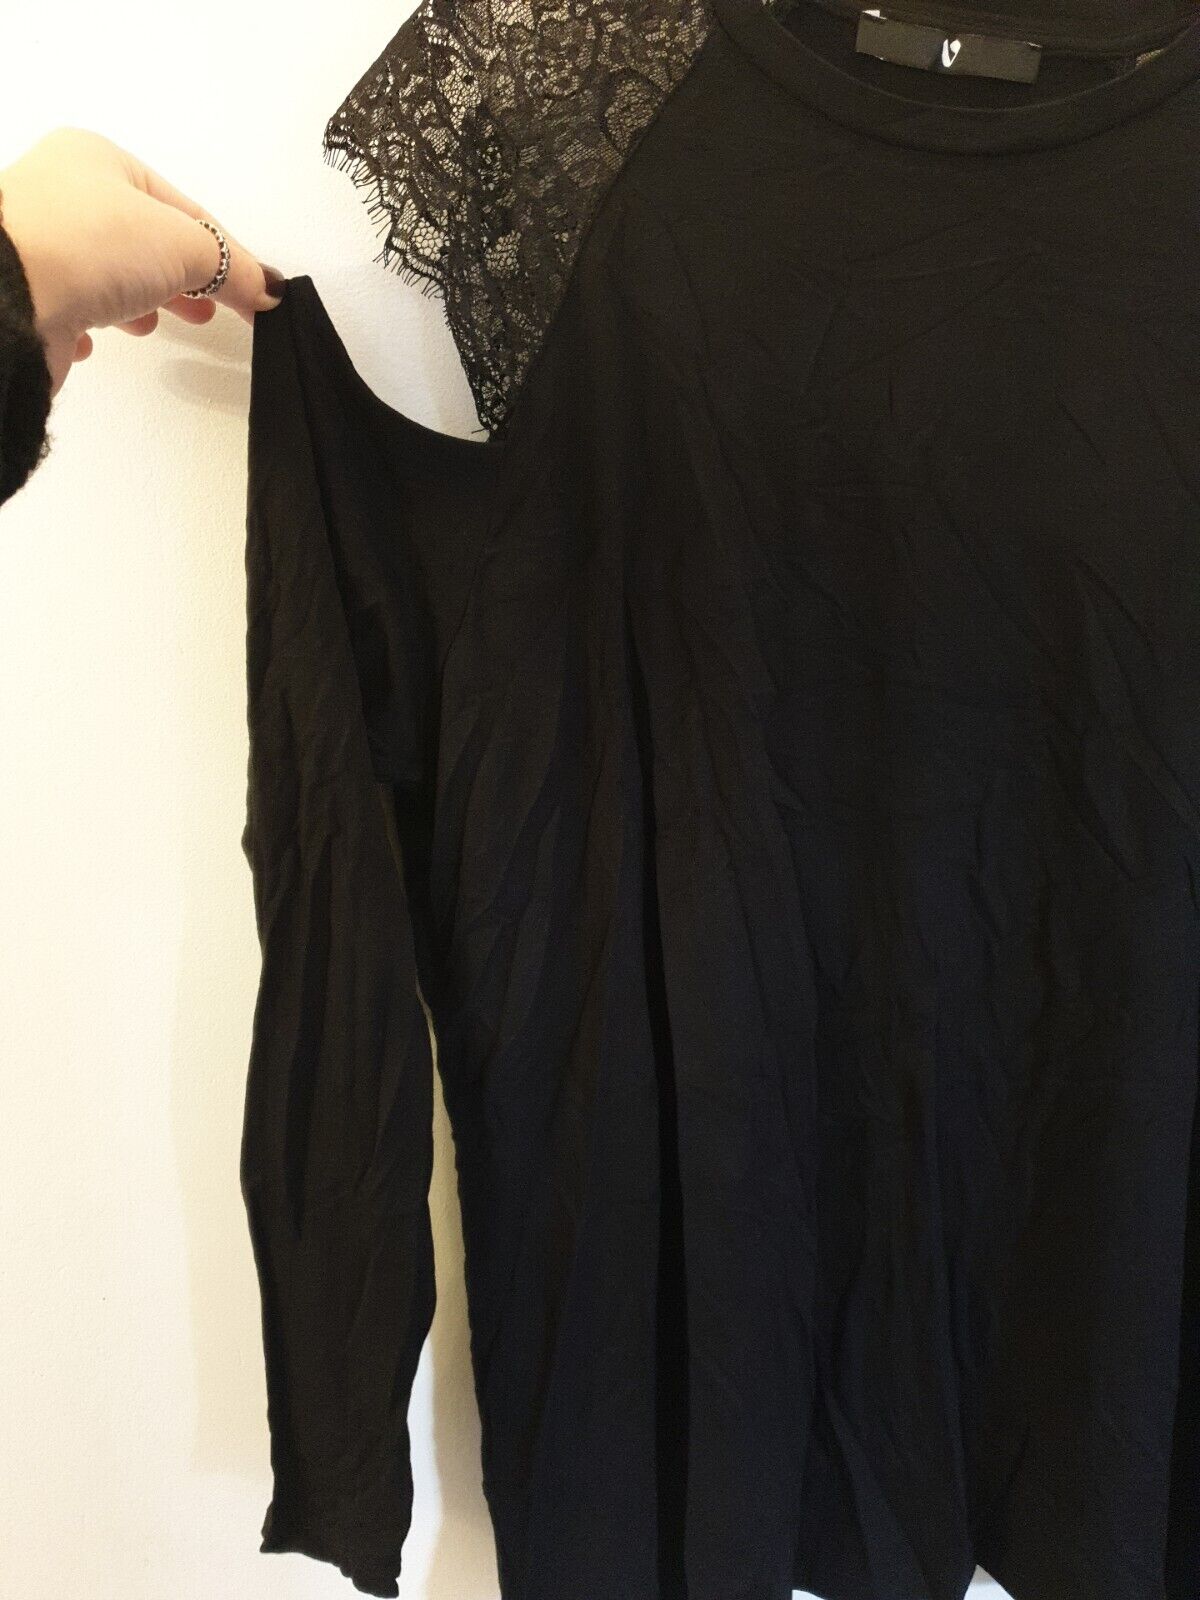 Womens Cold Shoulder Long Sleeve Top - Black. Uk16